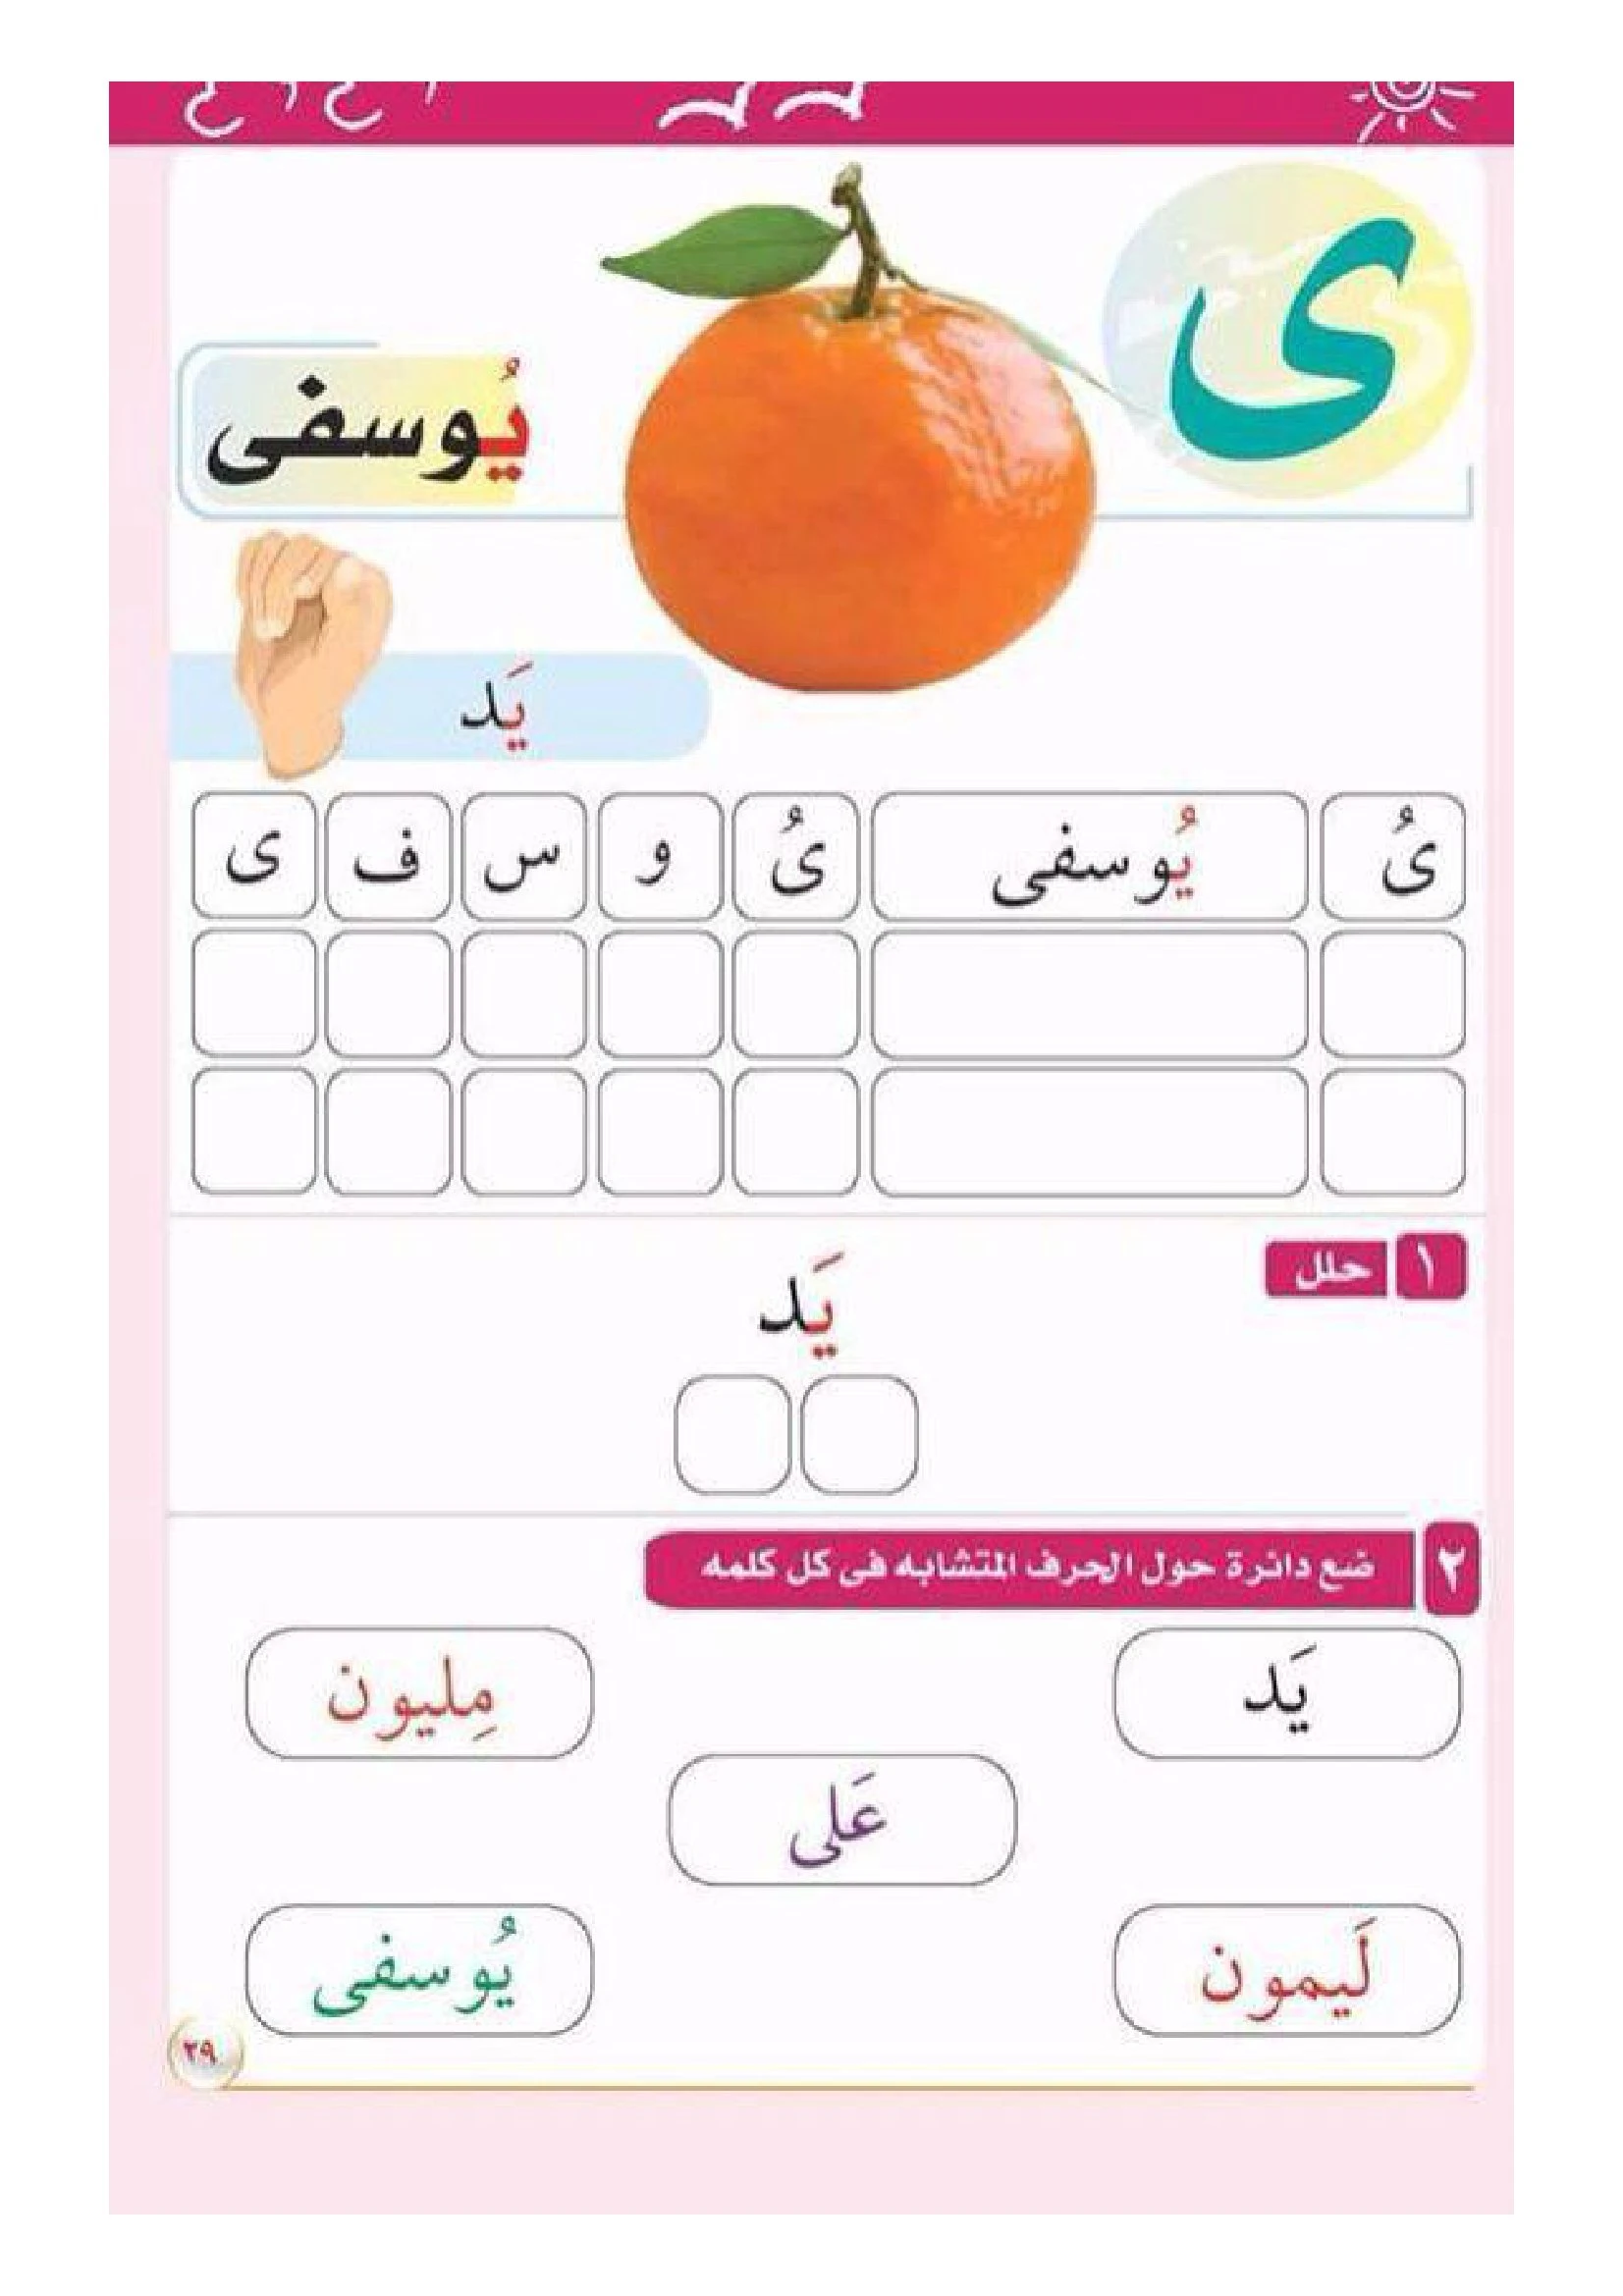 بطاقات تحليل وتركيب الحروف العربية من الألف الى الياءpdf تحميل مباشر